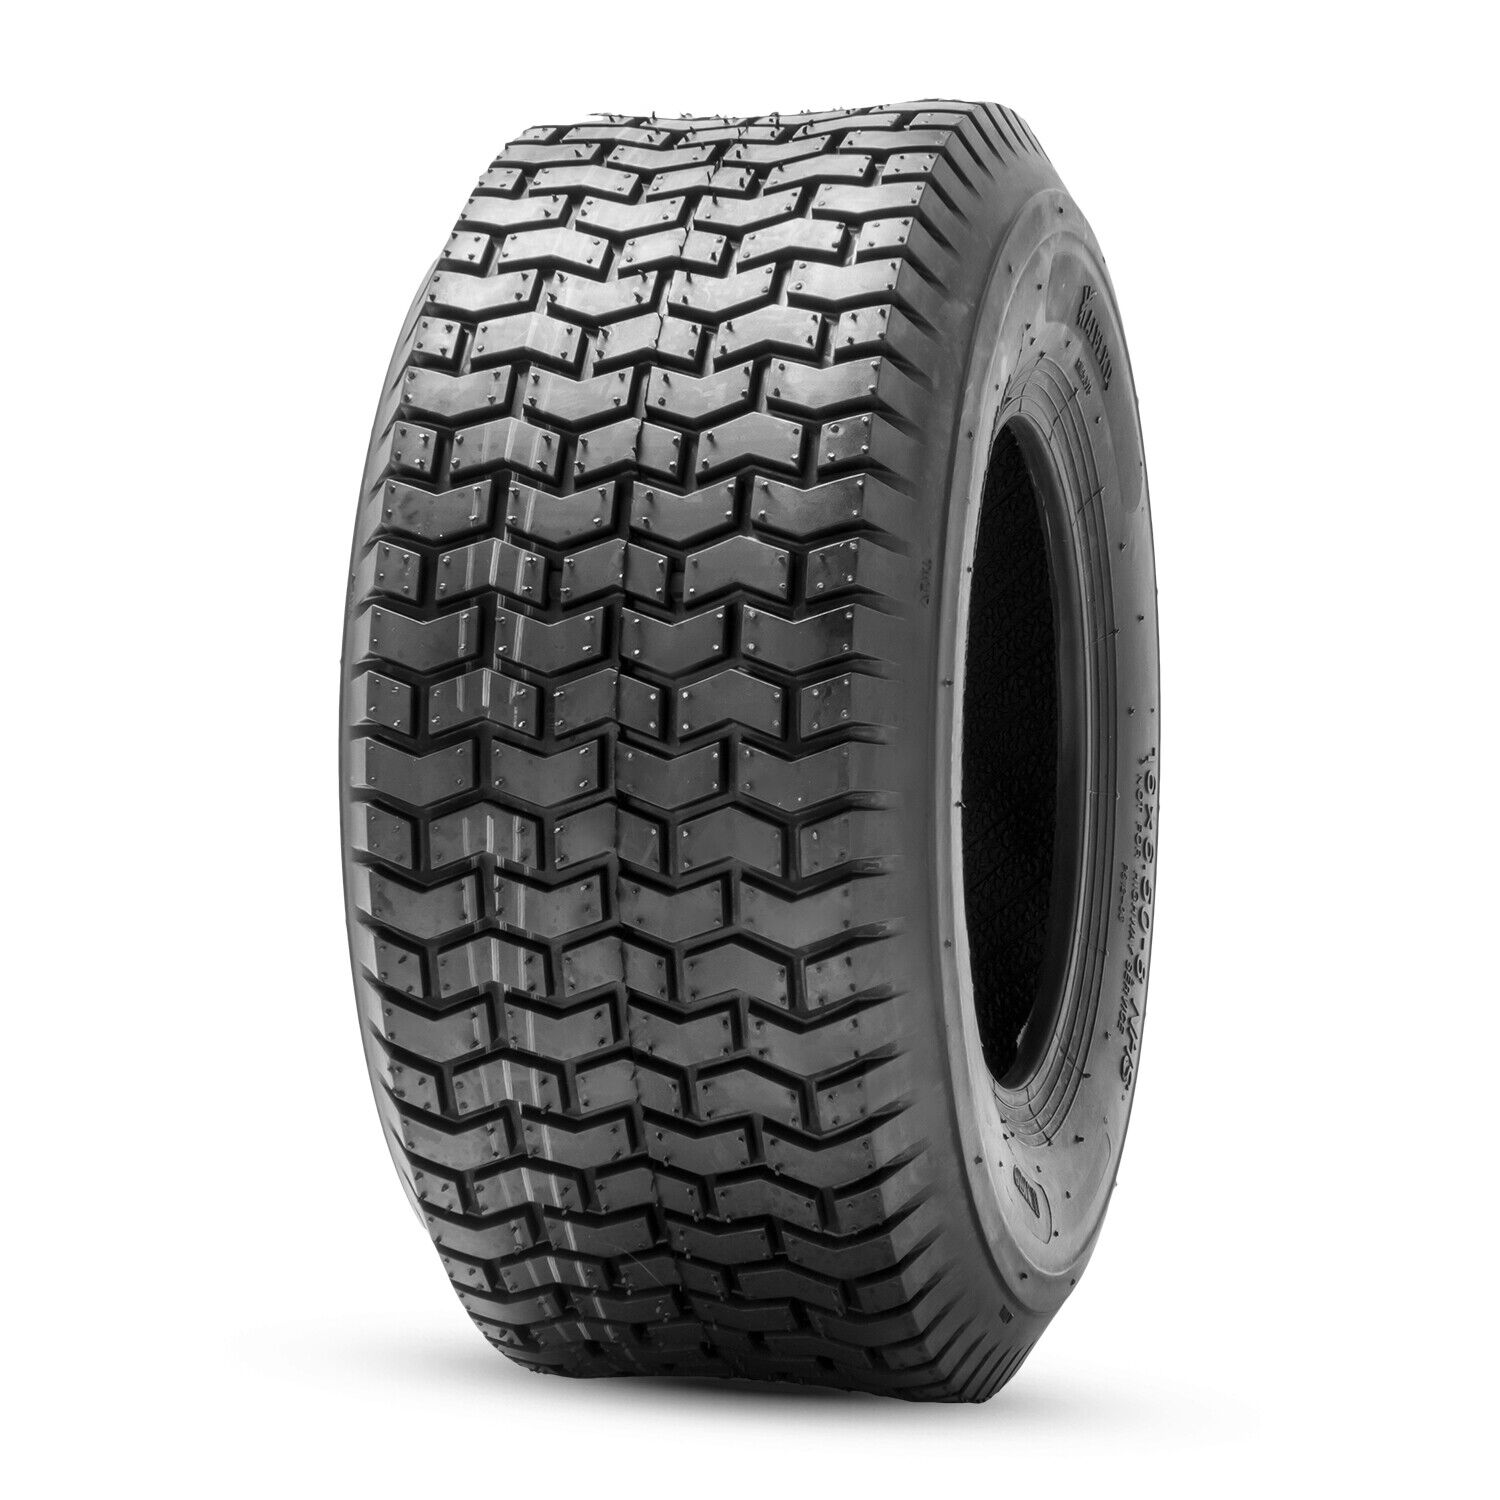 16x6.50-8 Lawn Mower Tire Tubeless 16x6.5x8 16x6.5-8 Heavy Duty 4Ply Garden Tyre